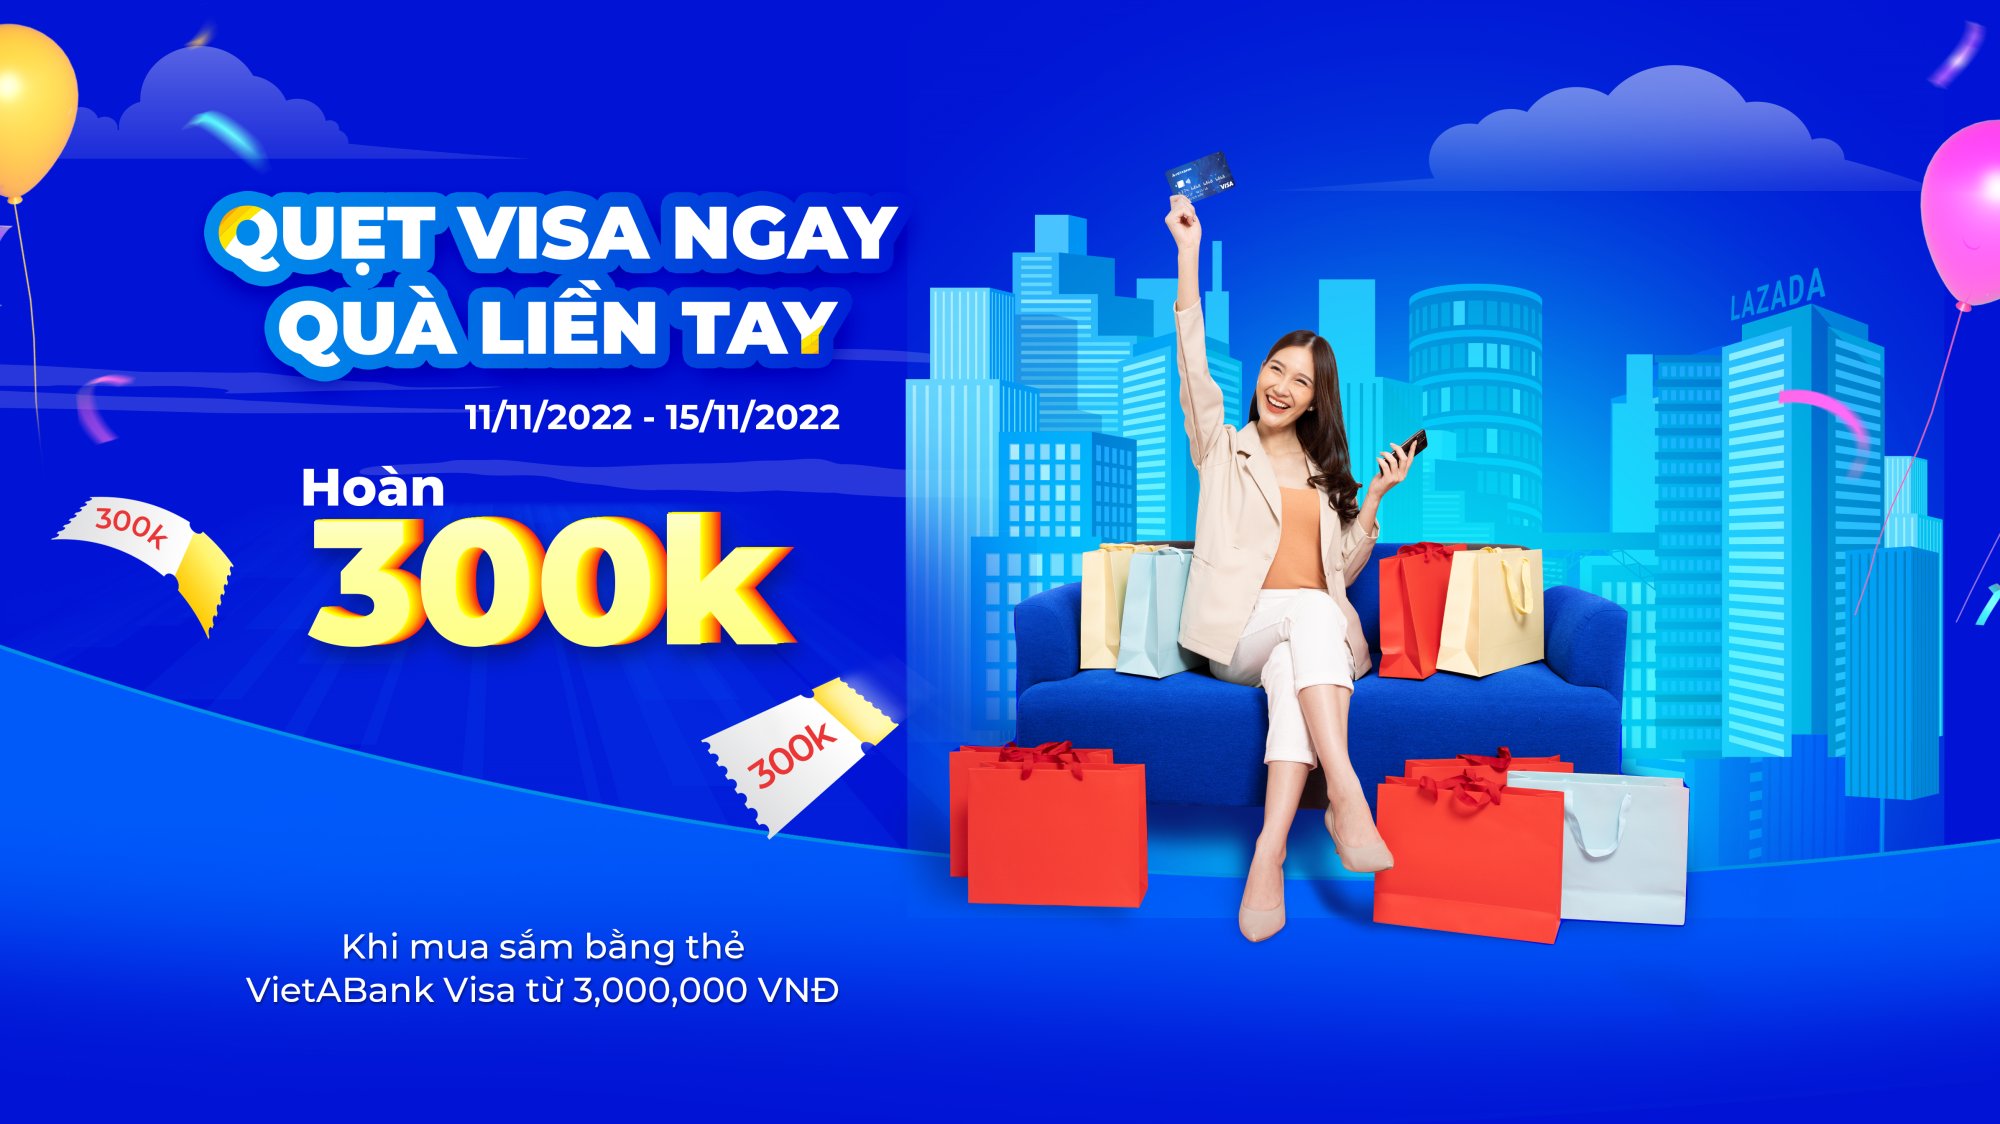 💸🛒 Quẹt thẻ VietABank Visa - Hoàn 300K! | Hưởng ứng tuần lễ mua sắm